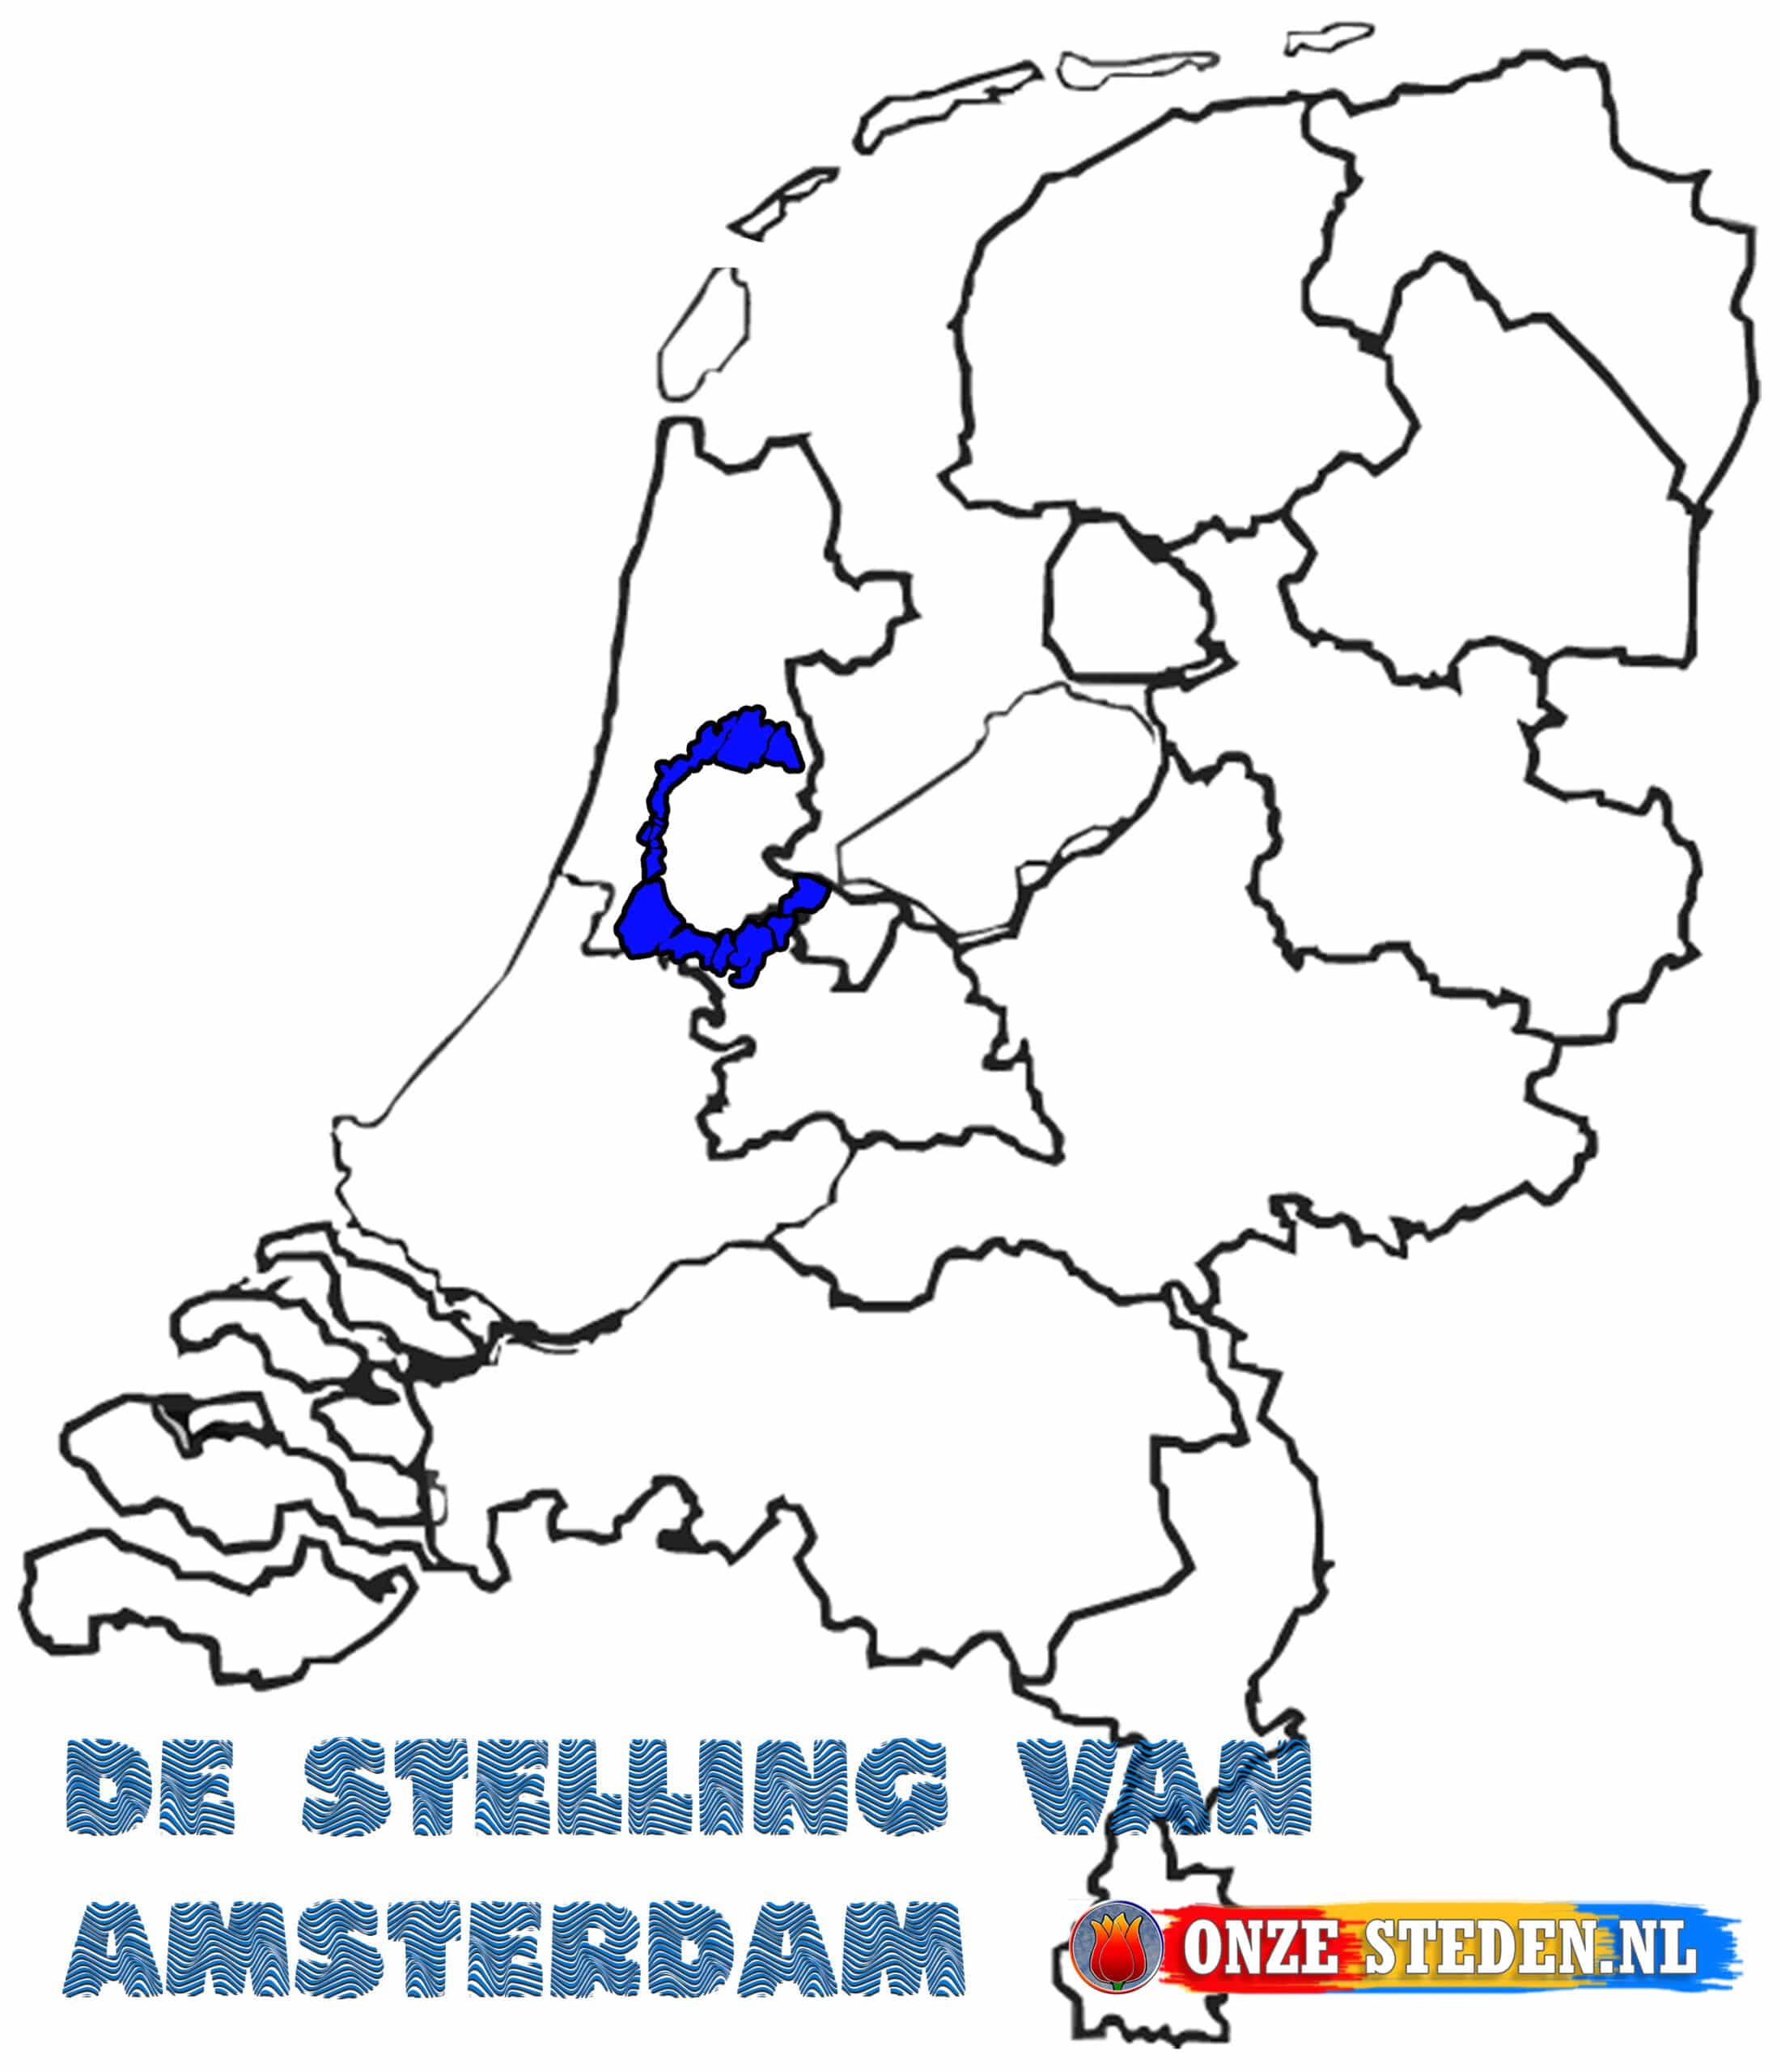 La posición de Amsterdam en el mapa